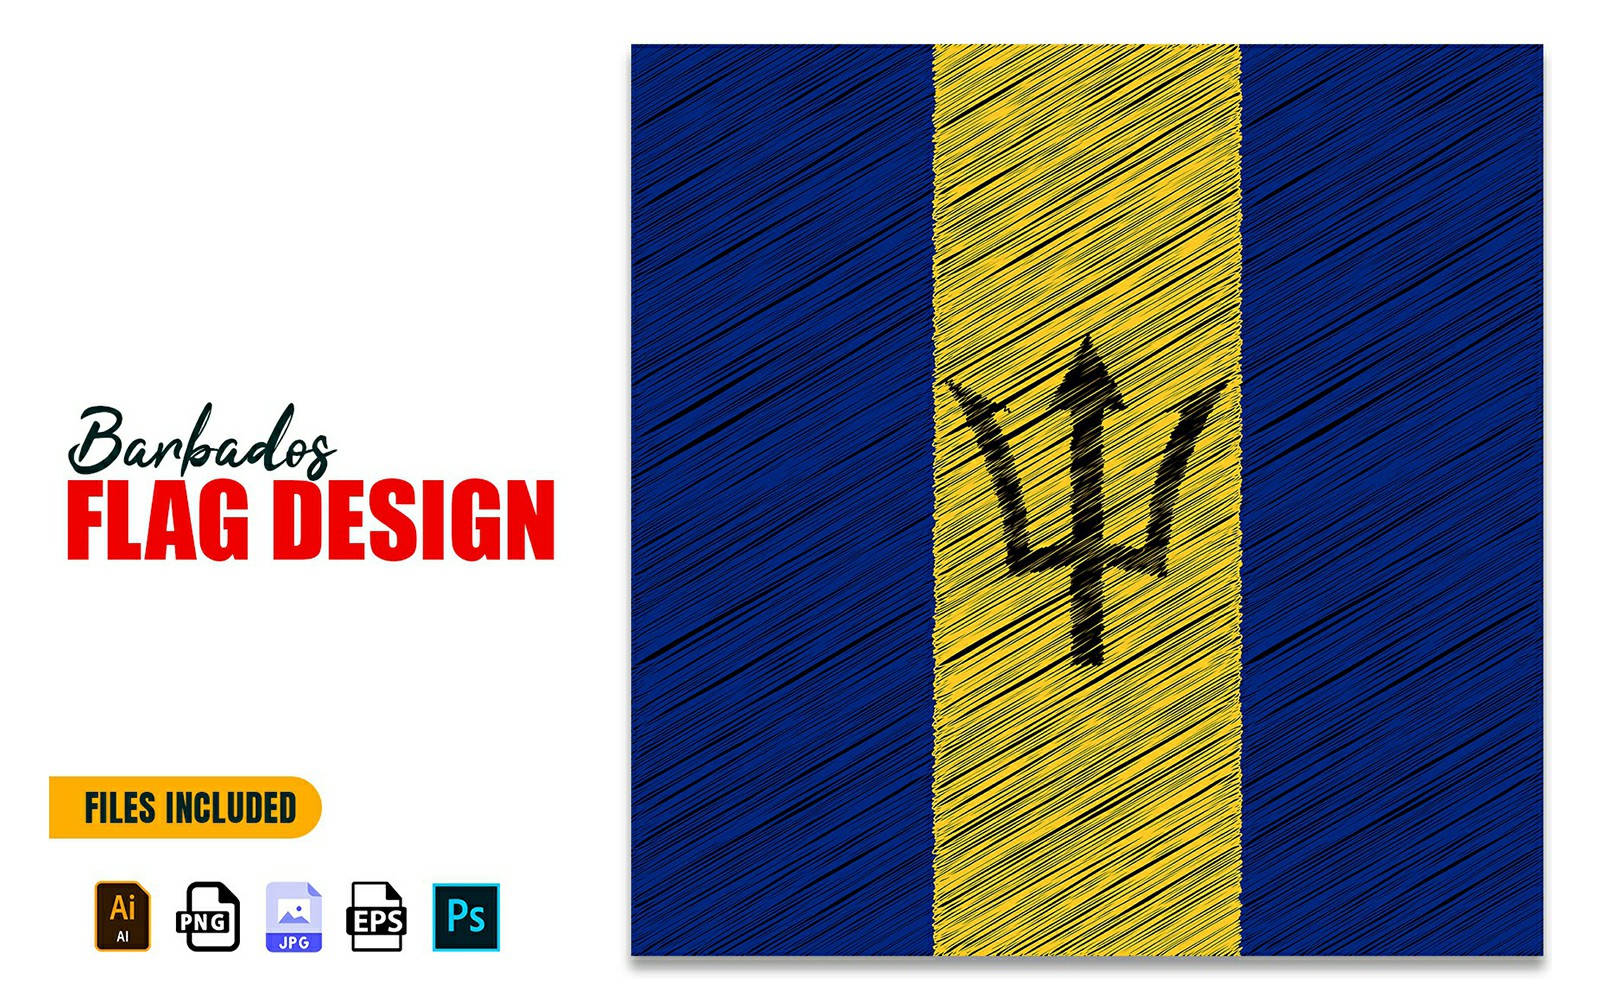 30 November Barbados Independence Day Flag Design Illustration